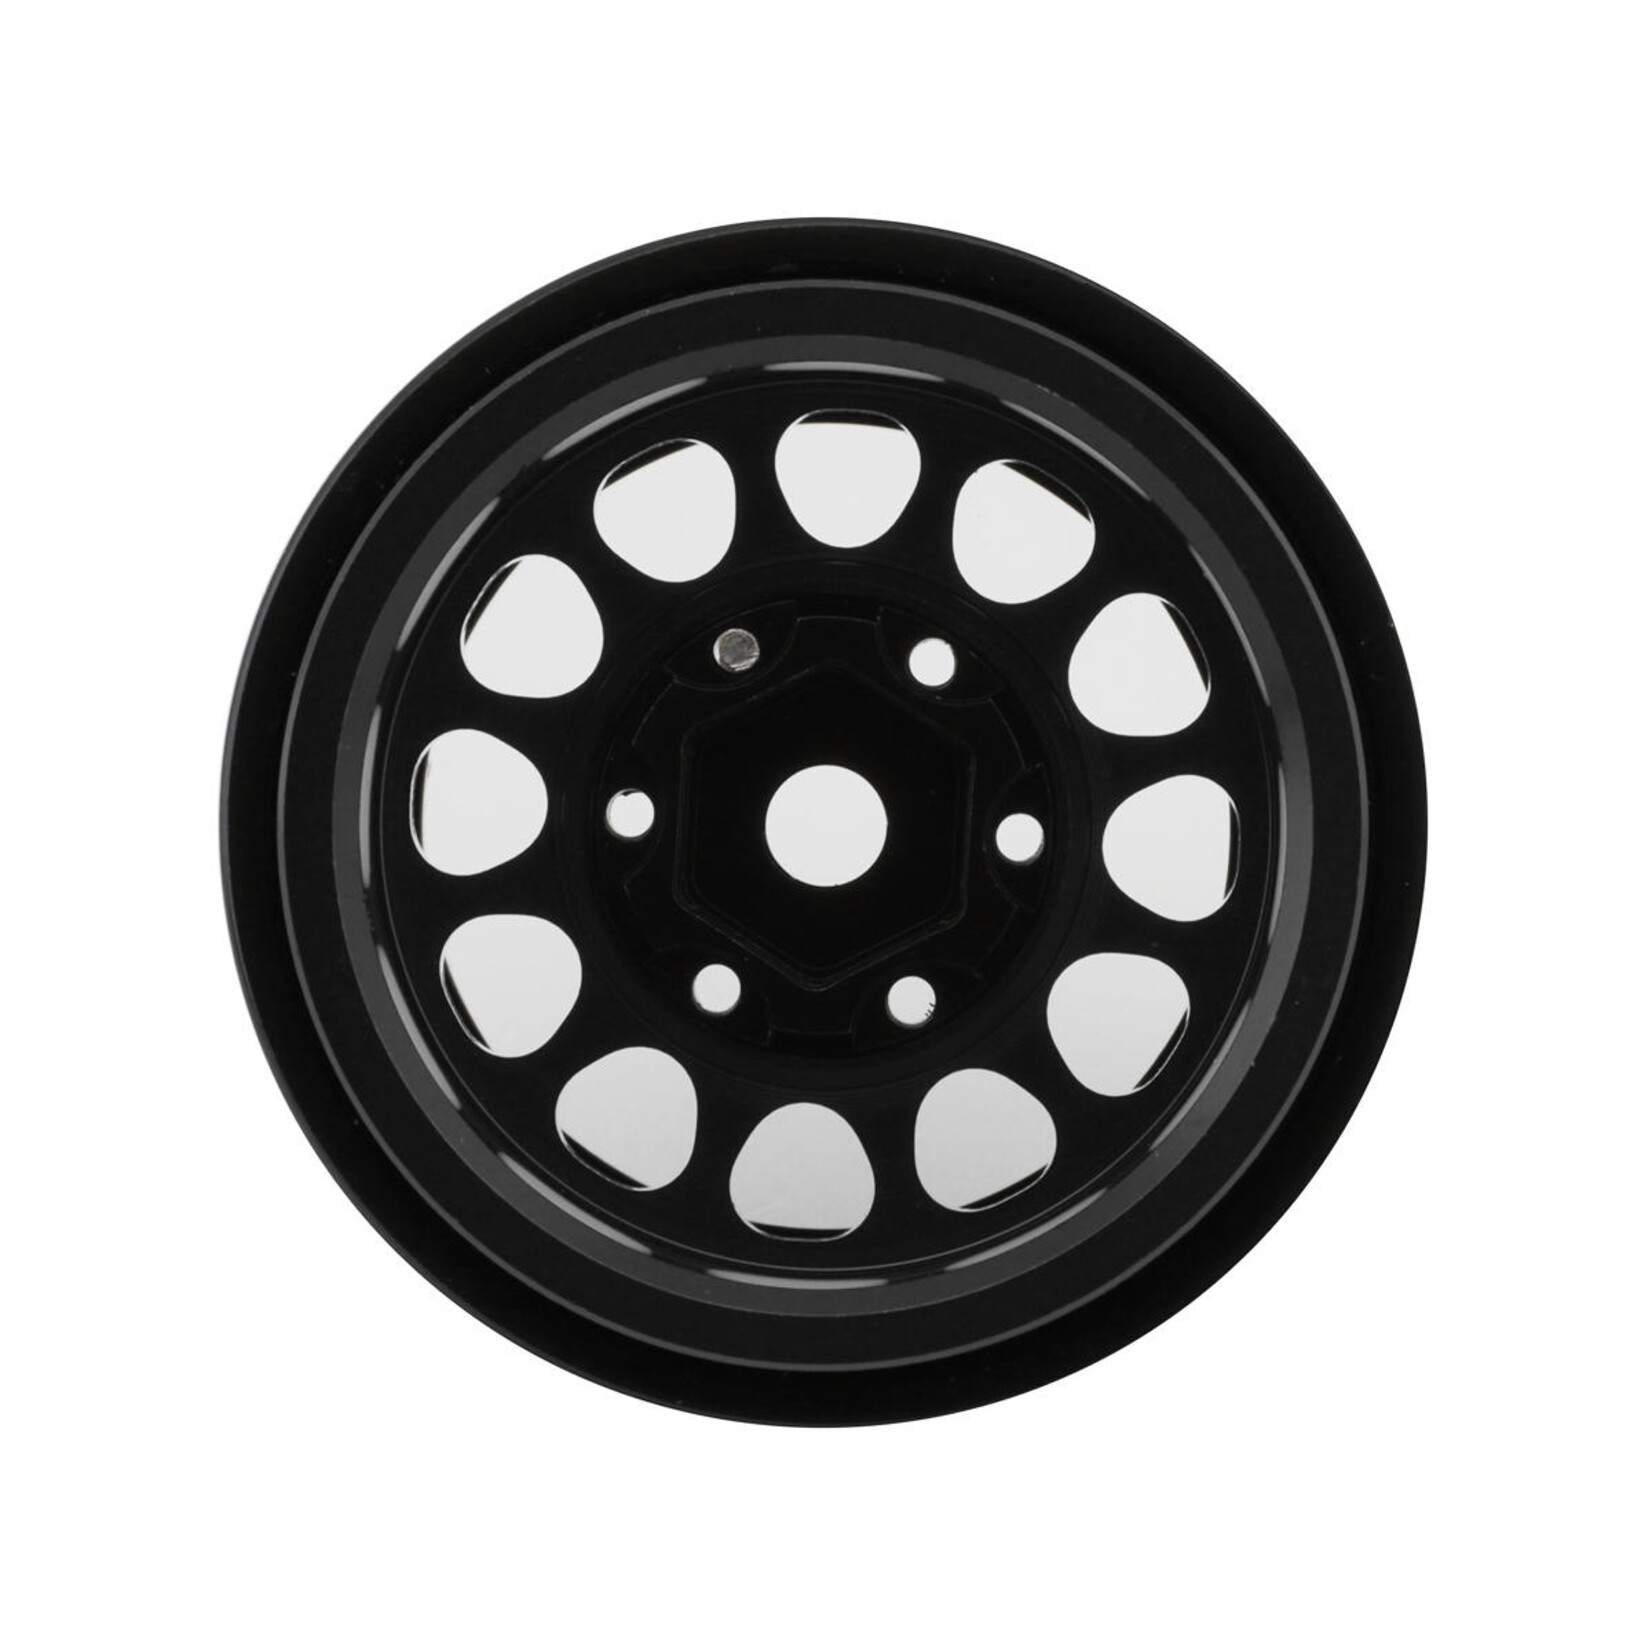 Treal Treal Hobby Type I 1.0" Classic 12-Spoke Beadlock Wheels (Black) (4) (27.2g) #X003Z3T1HN